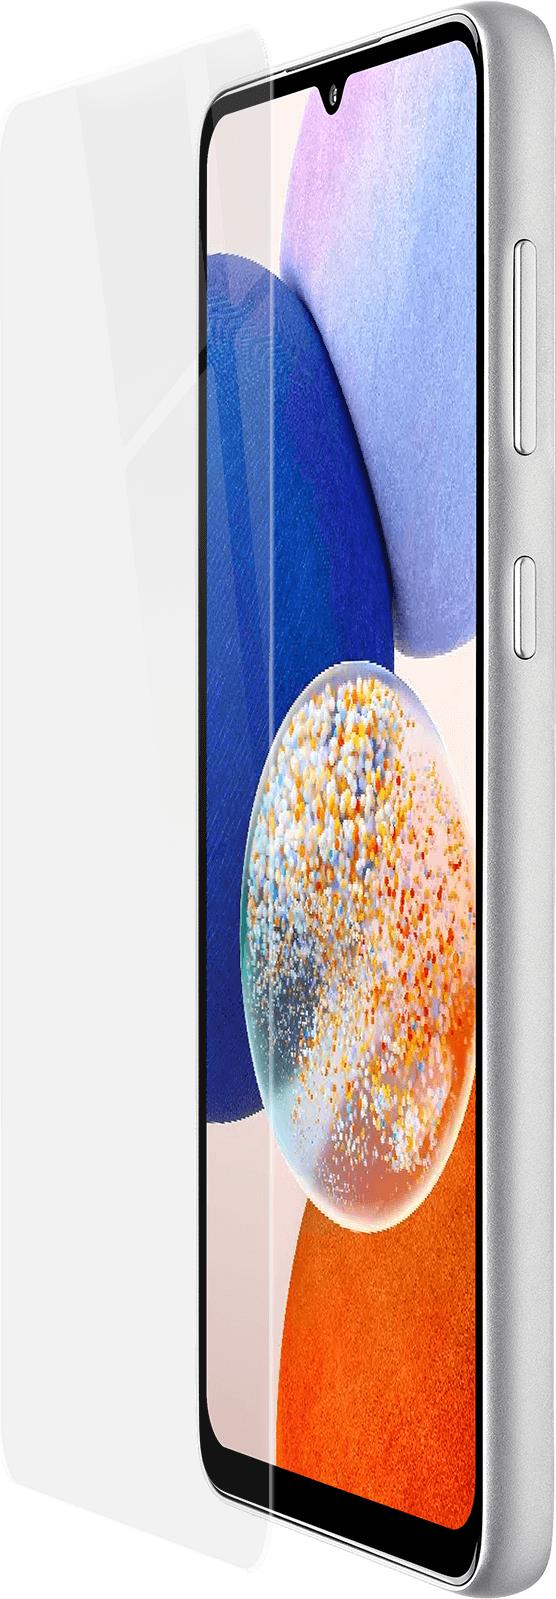 Artwizz SecondDisplay Glass für Samsung Galaxy A14 5G 4G - • Passend für Samsung Galaxy A14 (5G) & A14 (4G) • Einfaches Auftragen mit Haftung ohne Kleber dank Silikonbeschichtung • Schützt auch bei Stößen vor Kratzern und Displaybruch • Kristallklares Display mit Original-Feeling • Verhindert Mikro-Kratzer (7832-3768)